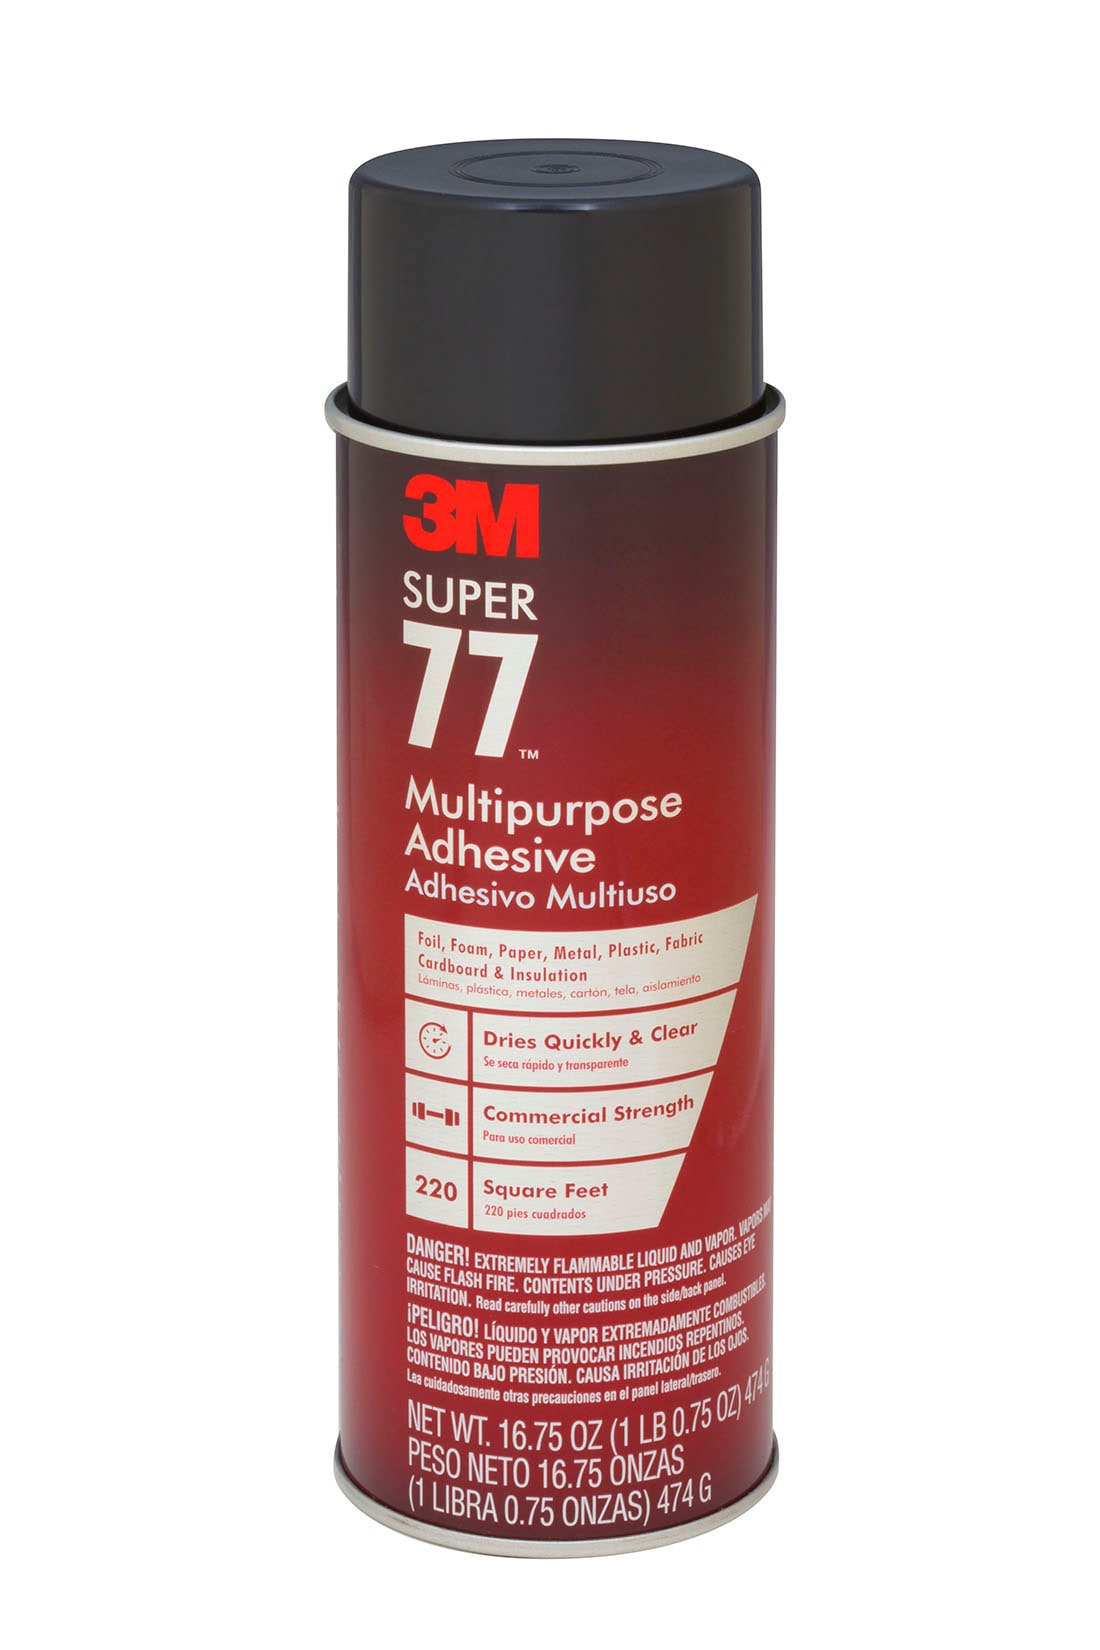 3M Spray 77 Spray Adhesive at